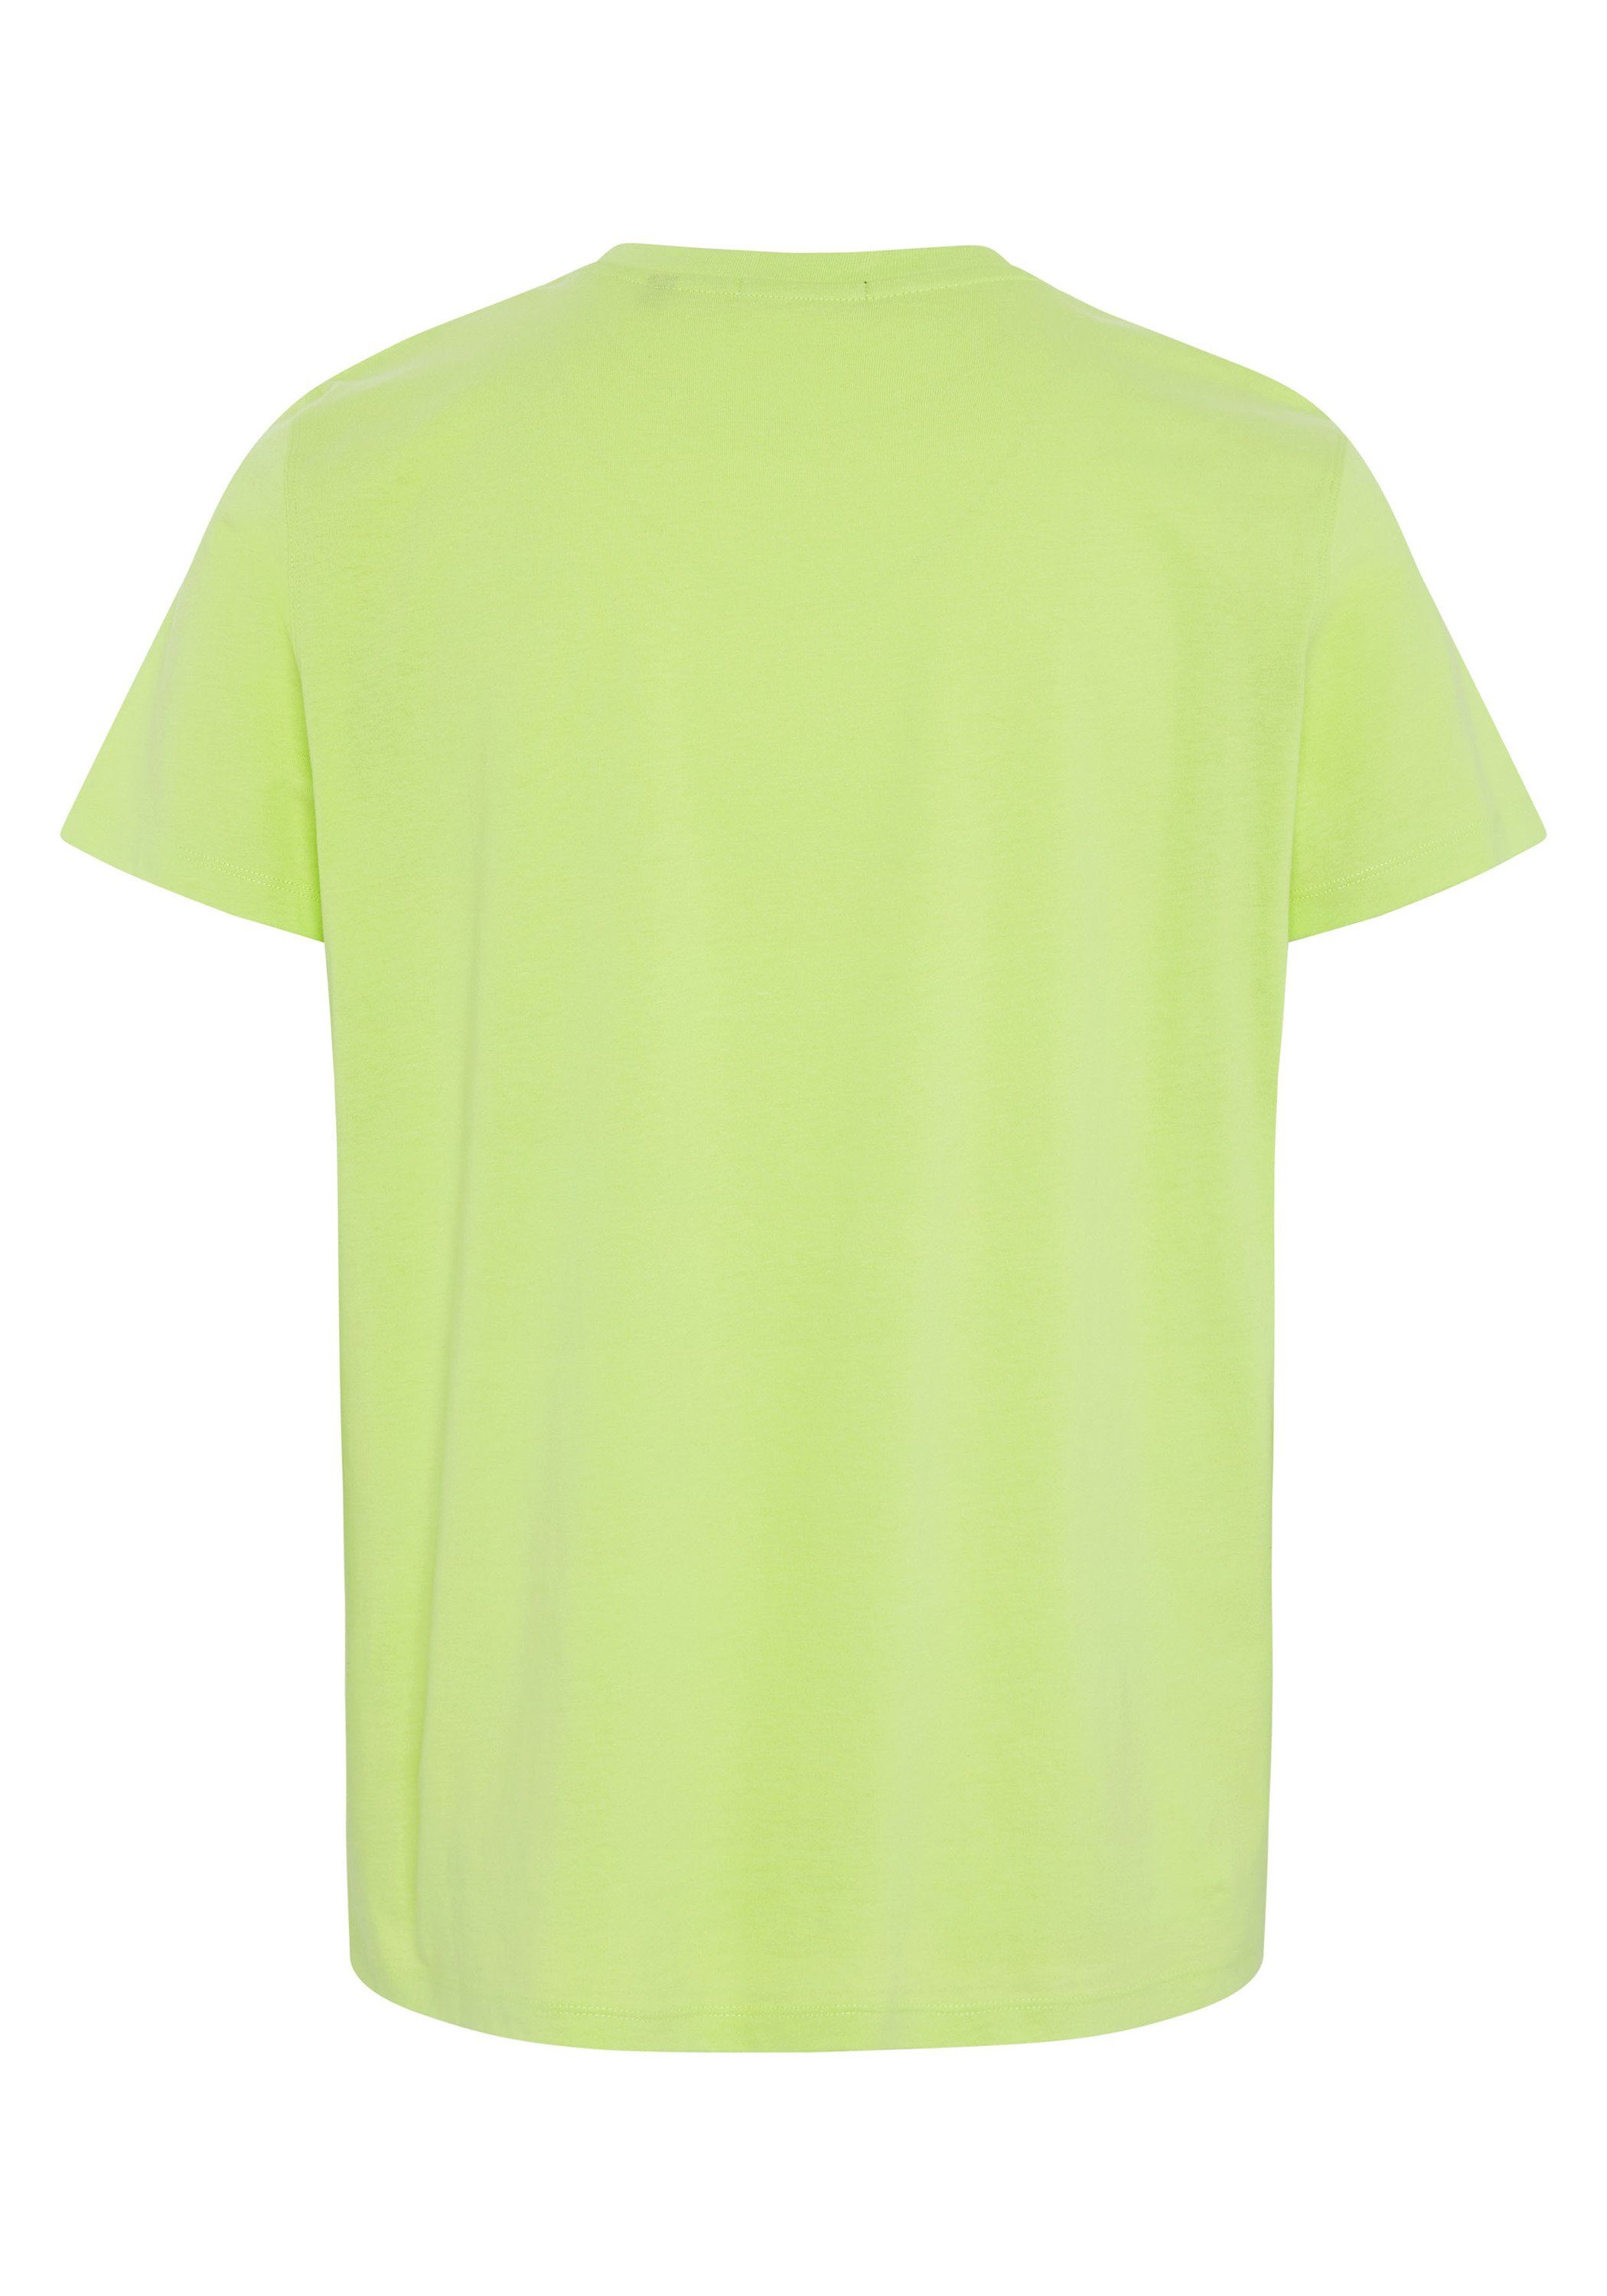 Chiemsee plakativem Sharp mit Print-Shirt Markenschriftzug 13-0535 T-Shirt Green 1